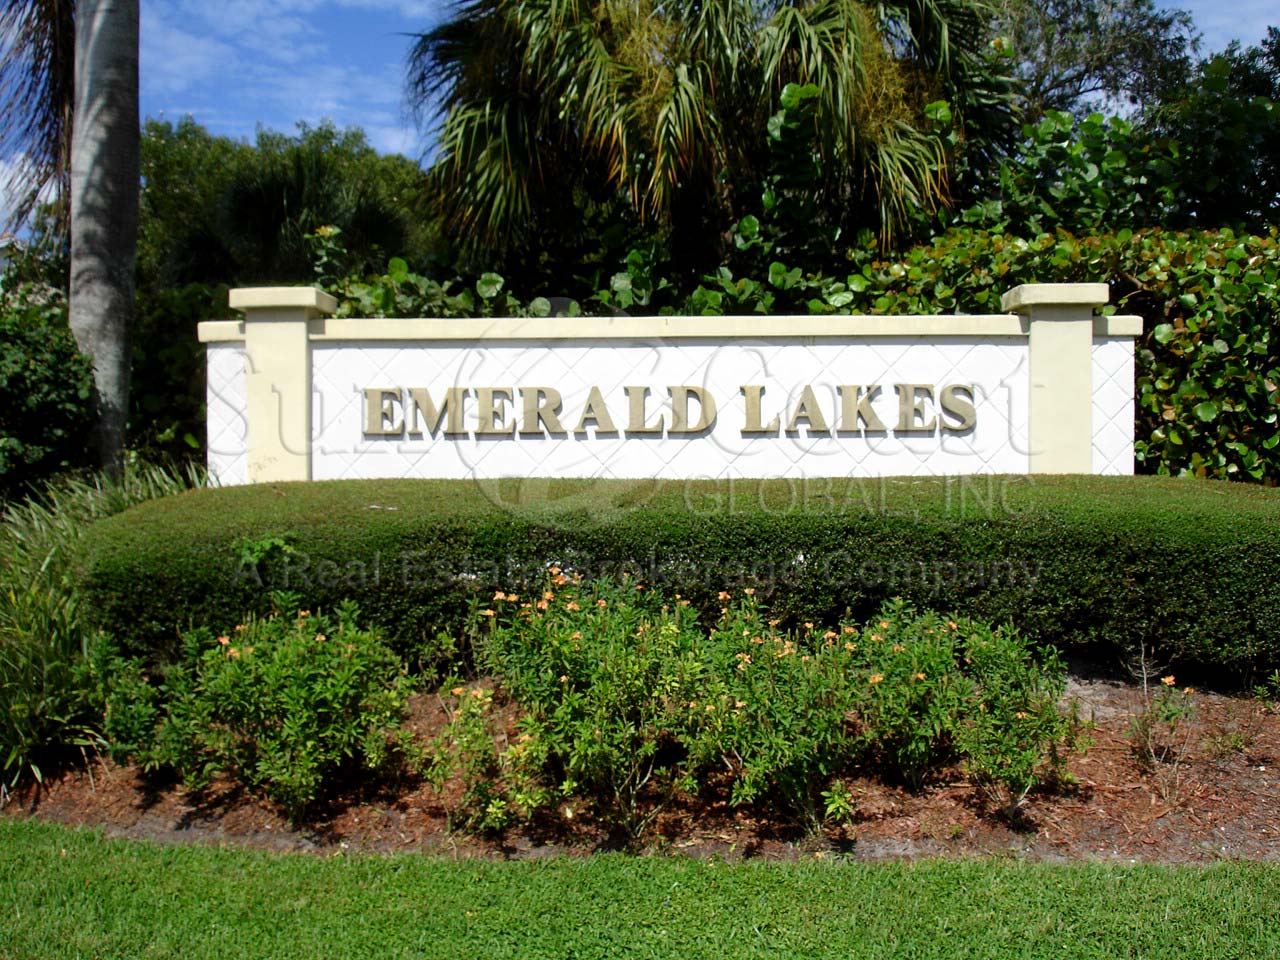 EMERALD LAKES Signage